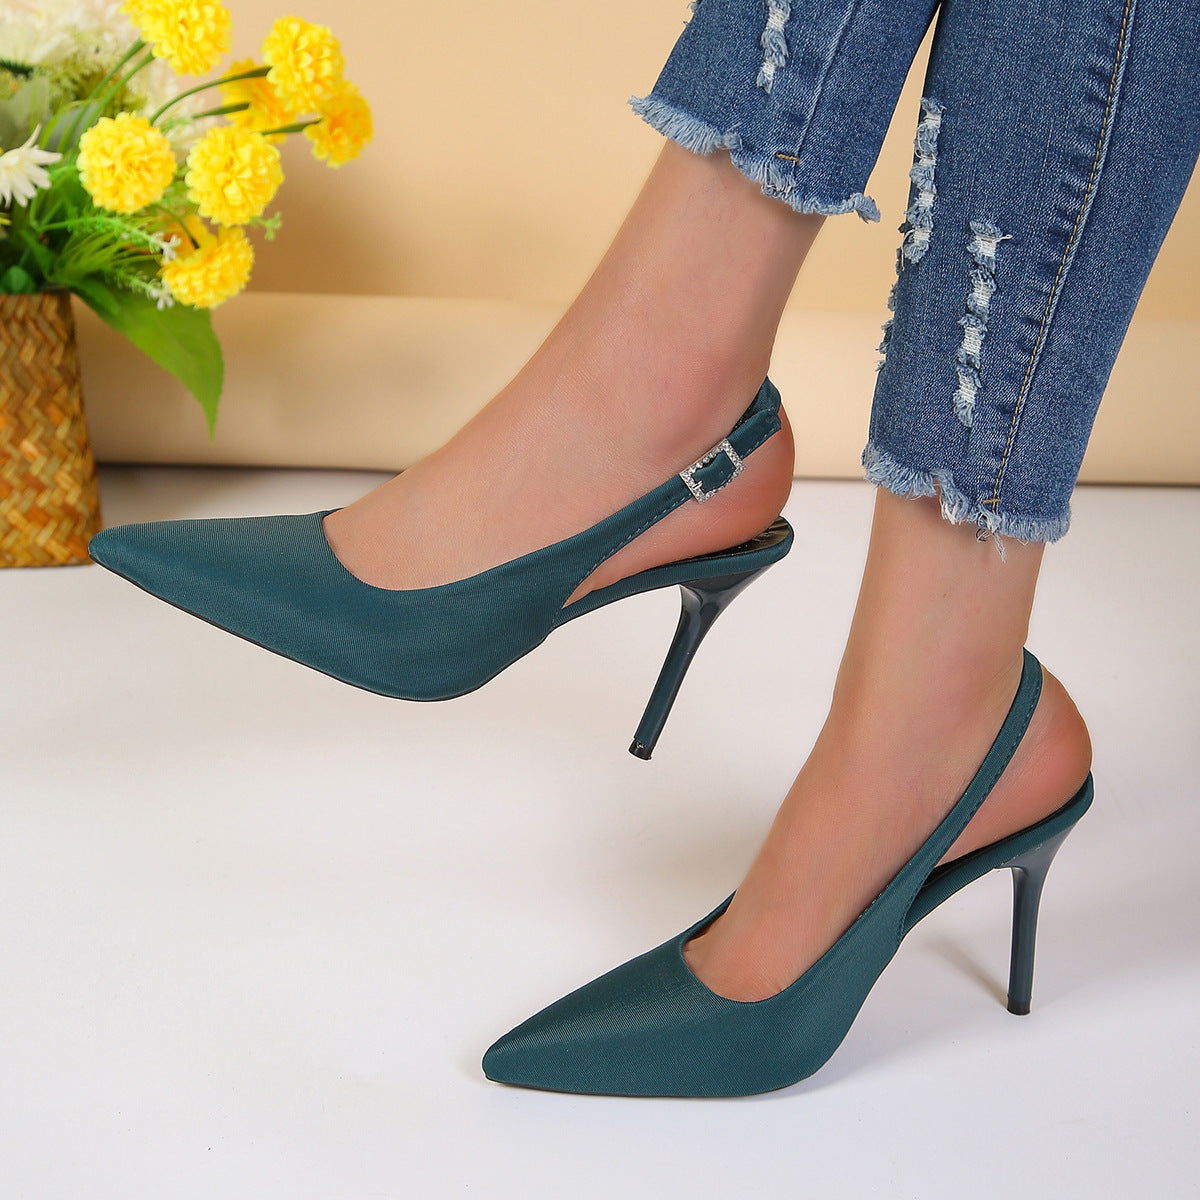 Sandalen mit spitzer Zehenschnalle Mode Sommer Stiletto High Heels Schuhe für Frauen - nargis